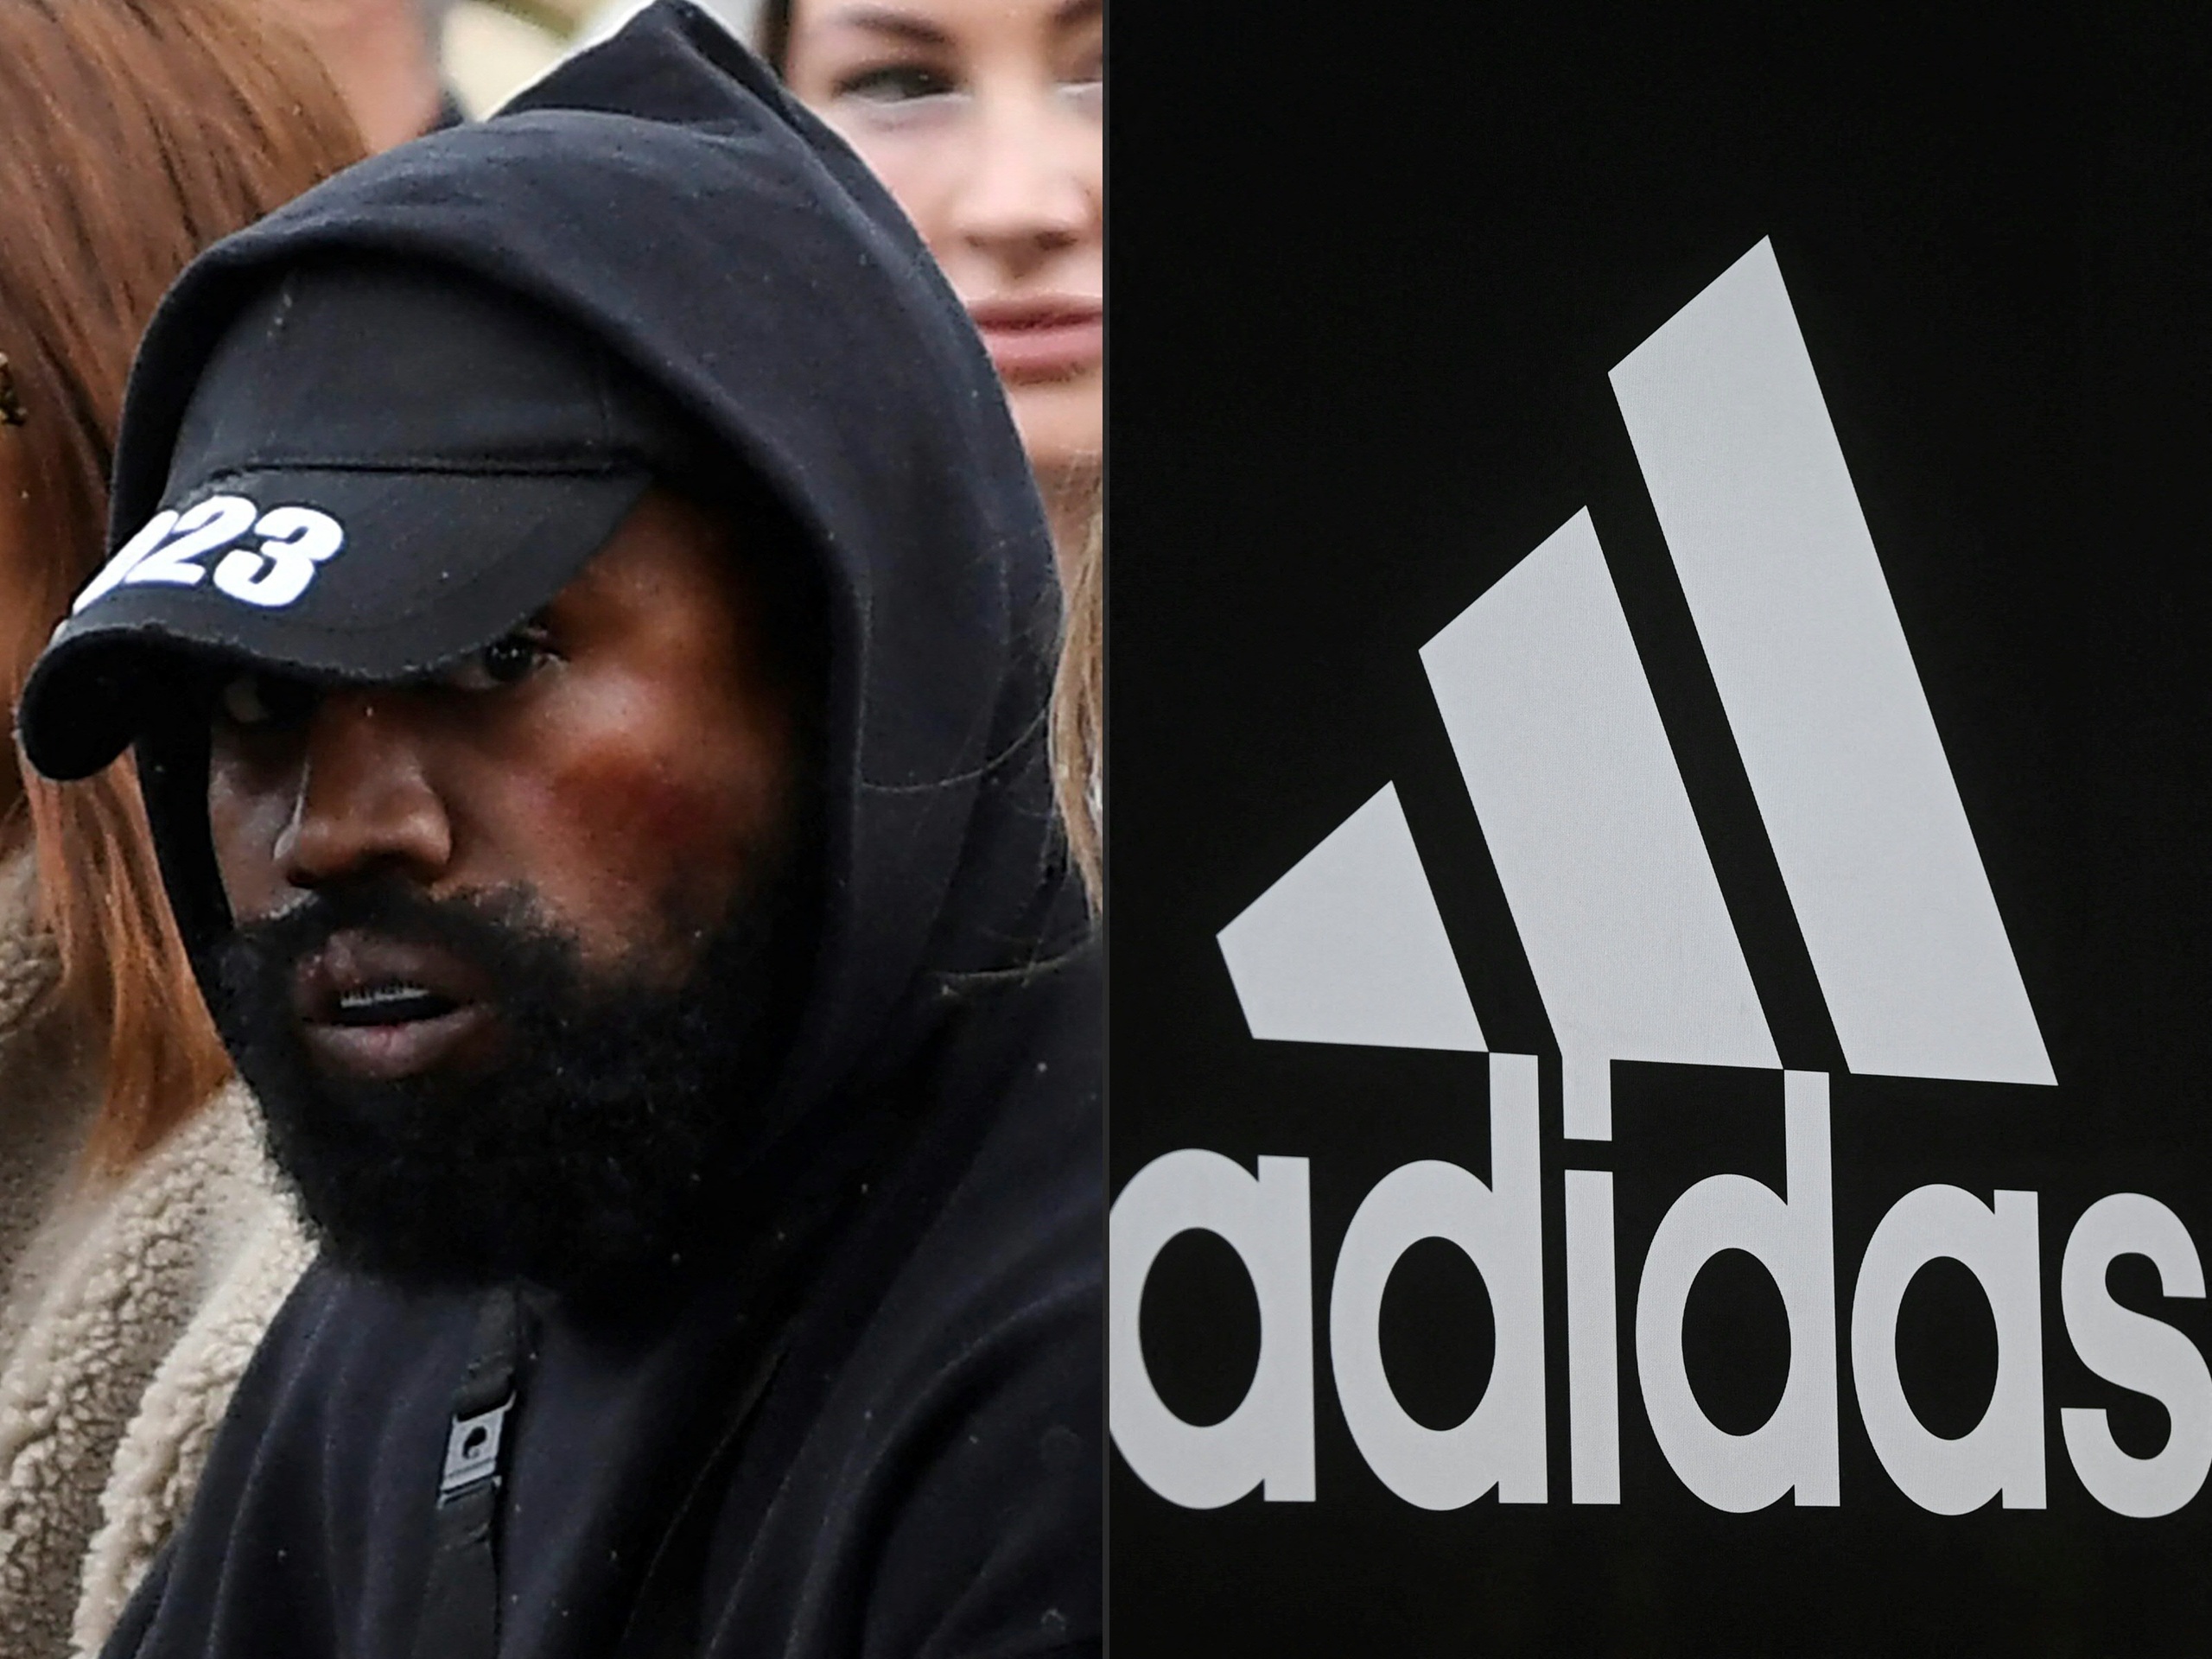 Breuk kost Adidas mogelijk honderden miljoenen meer dan verwacht | BNR Nieuwsradio